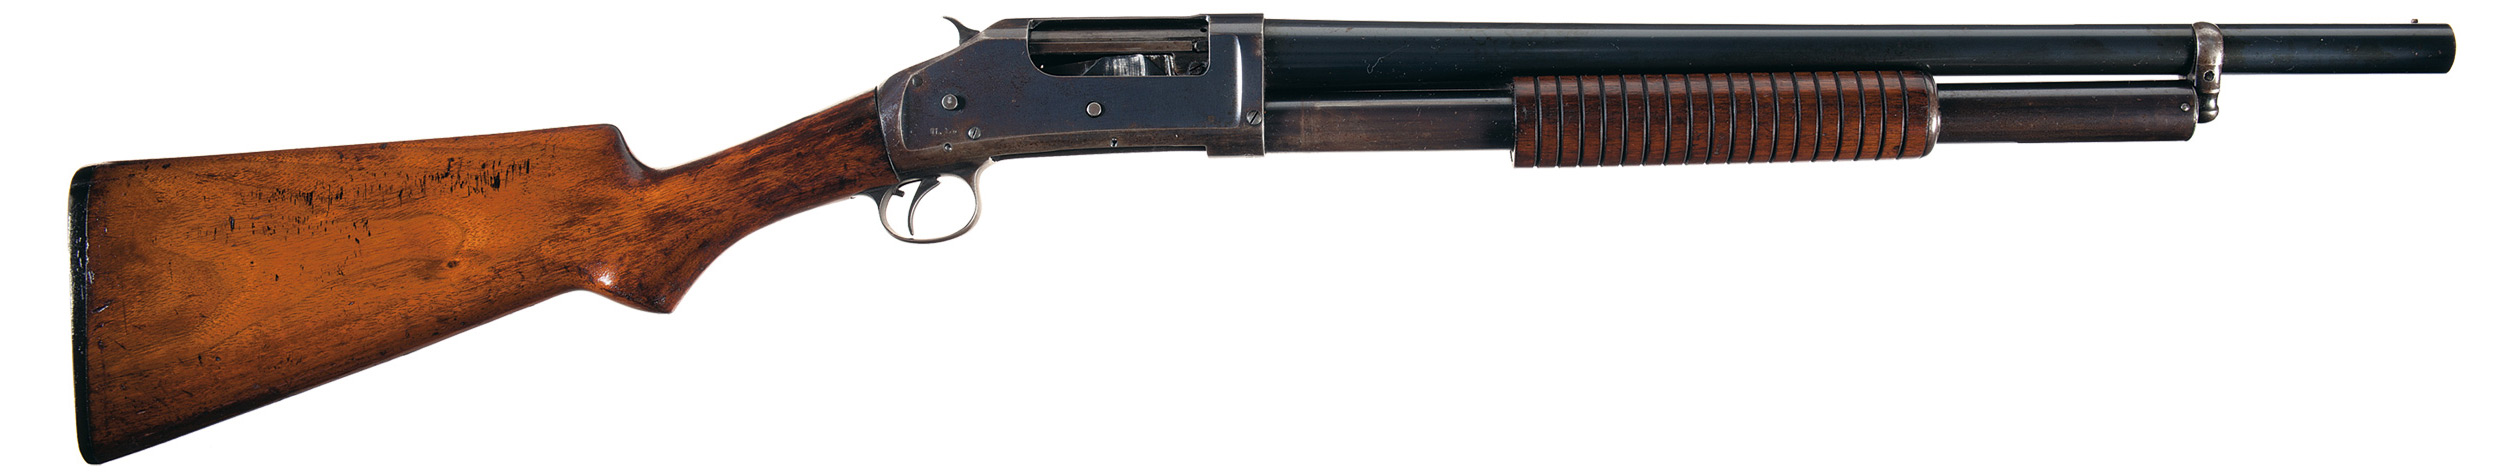 1897 riot gun.jpg.